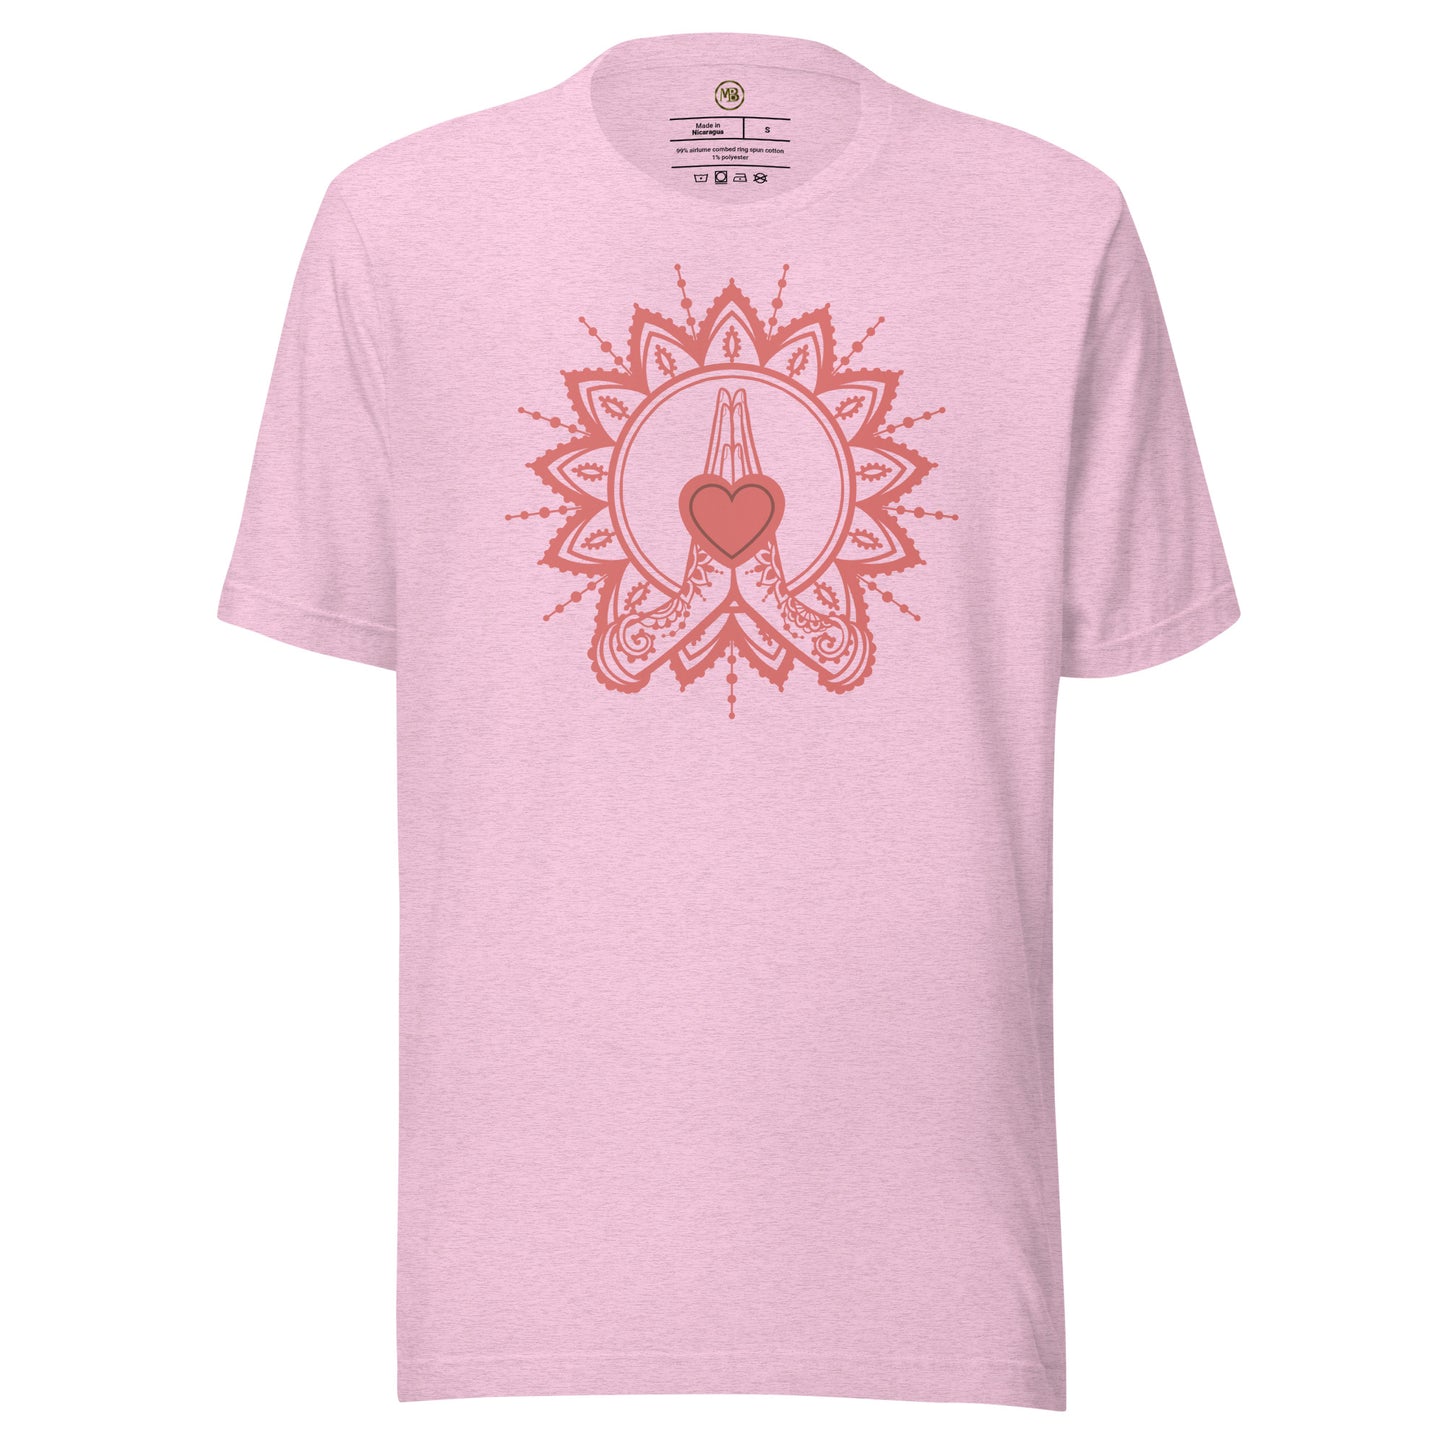 Healing Heart & Hands Unisex T-Shirt